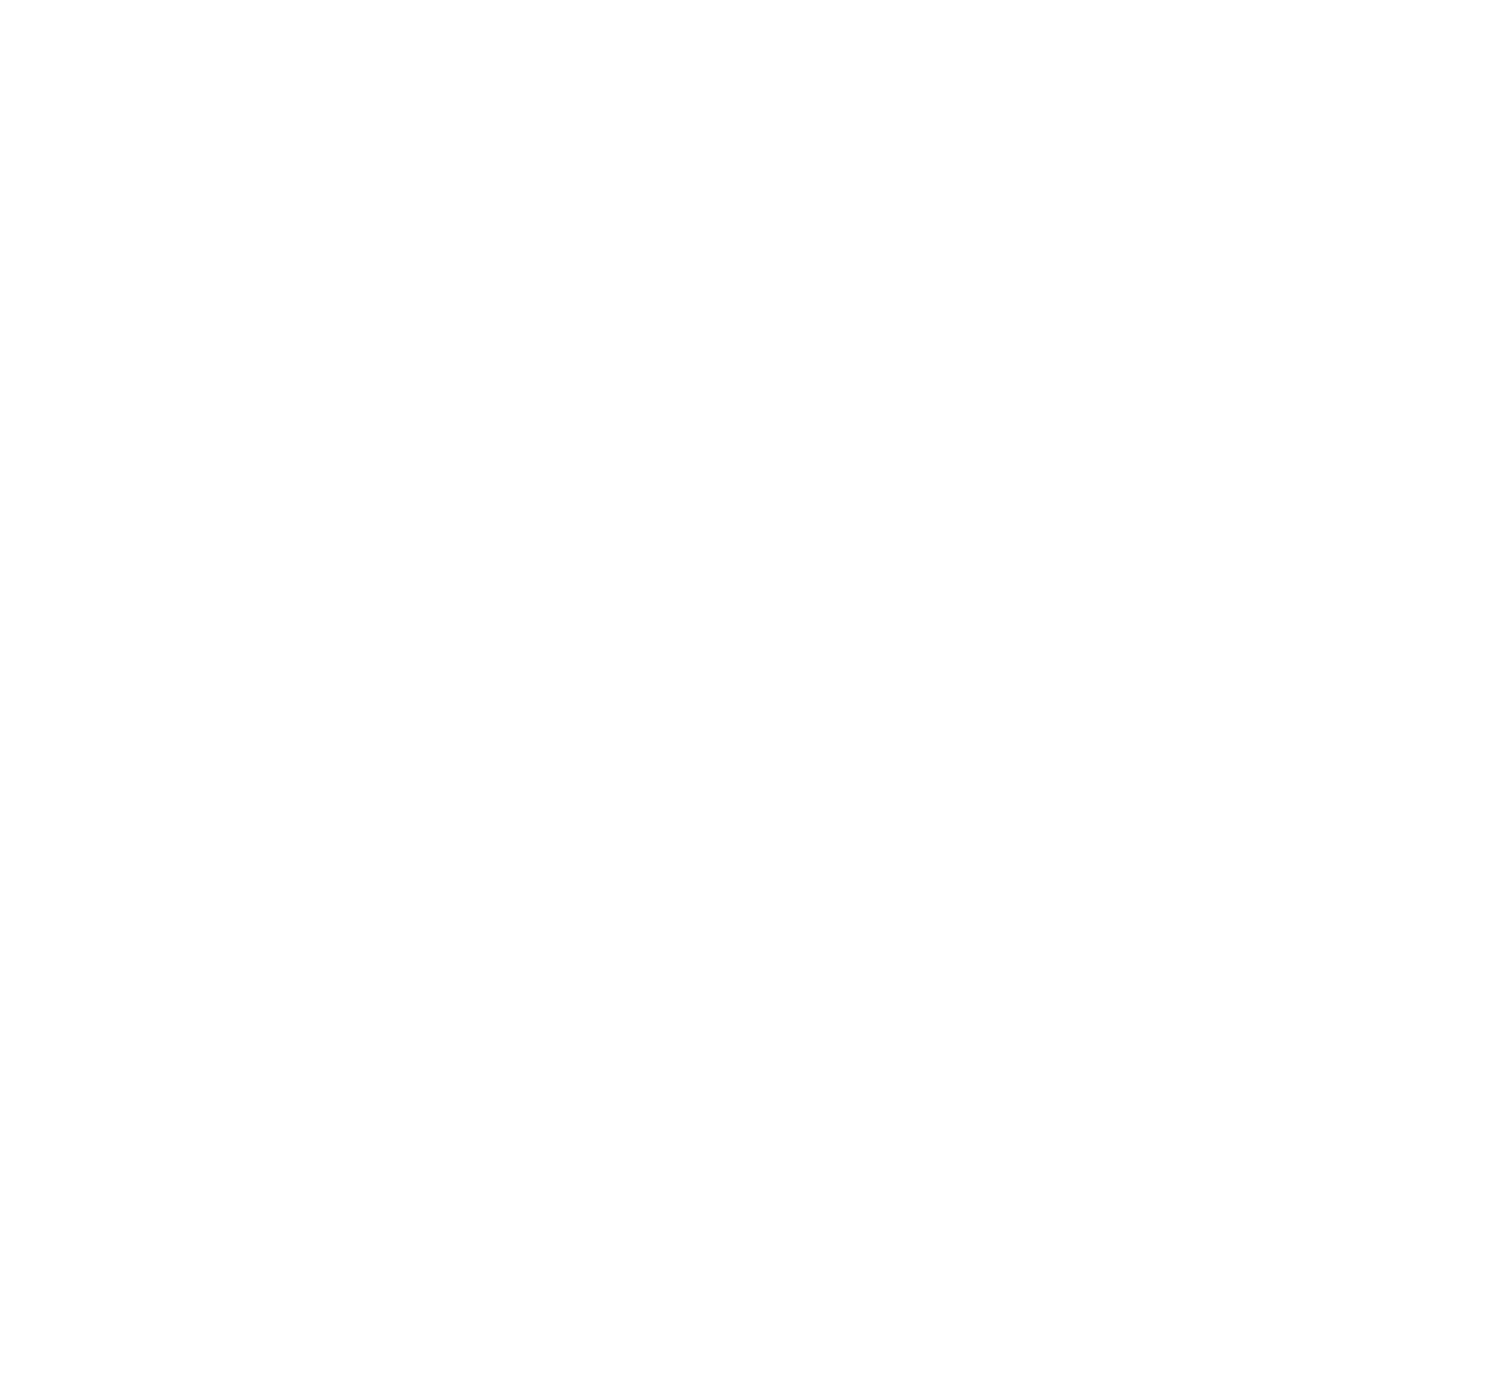 CORE GYM CLUB